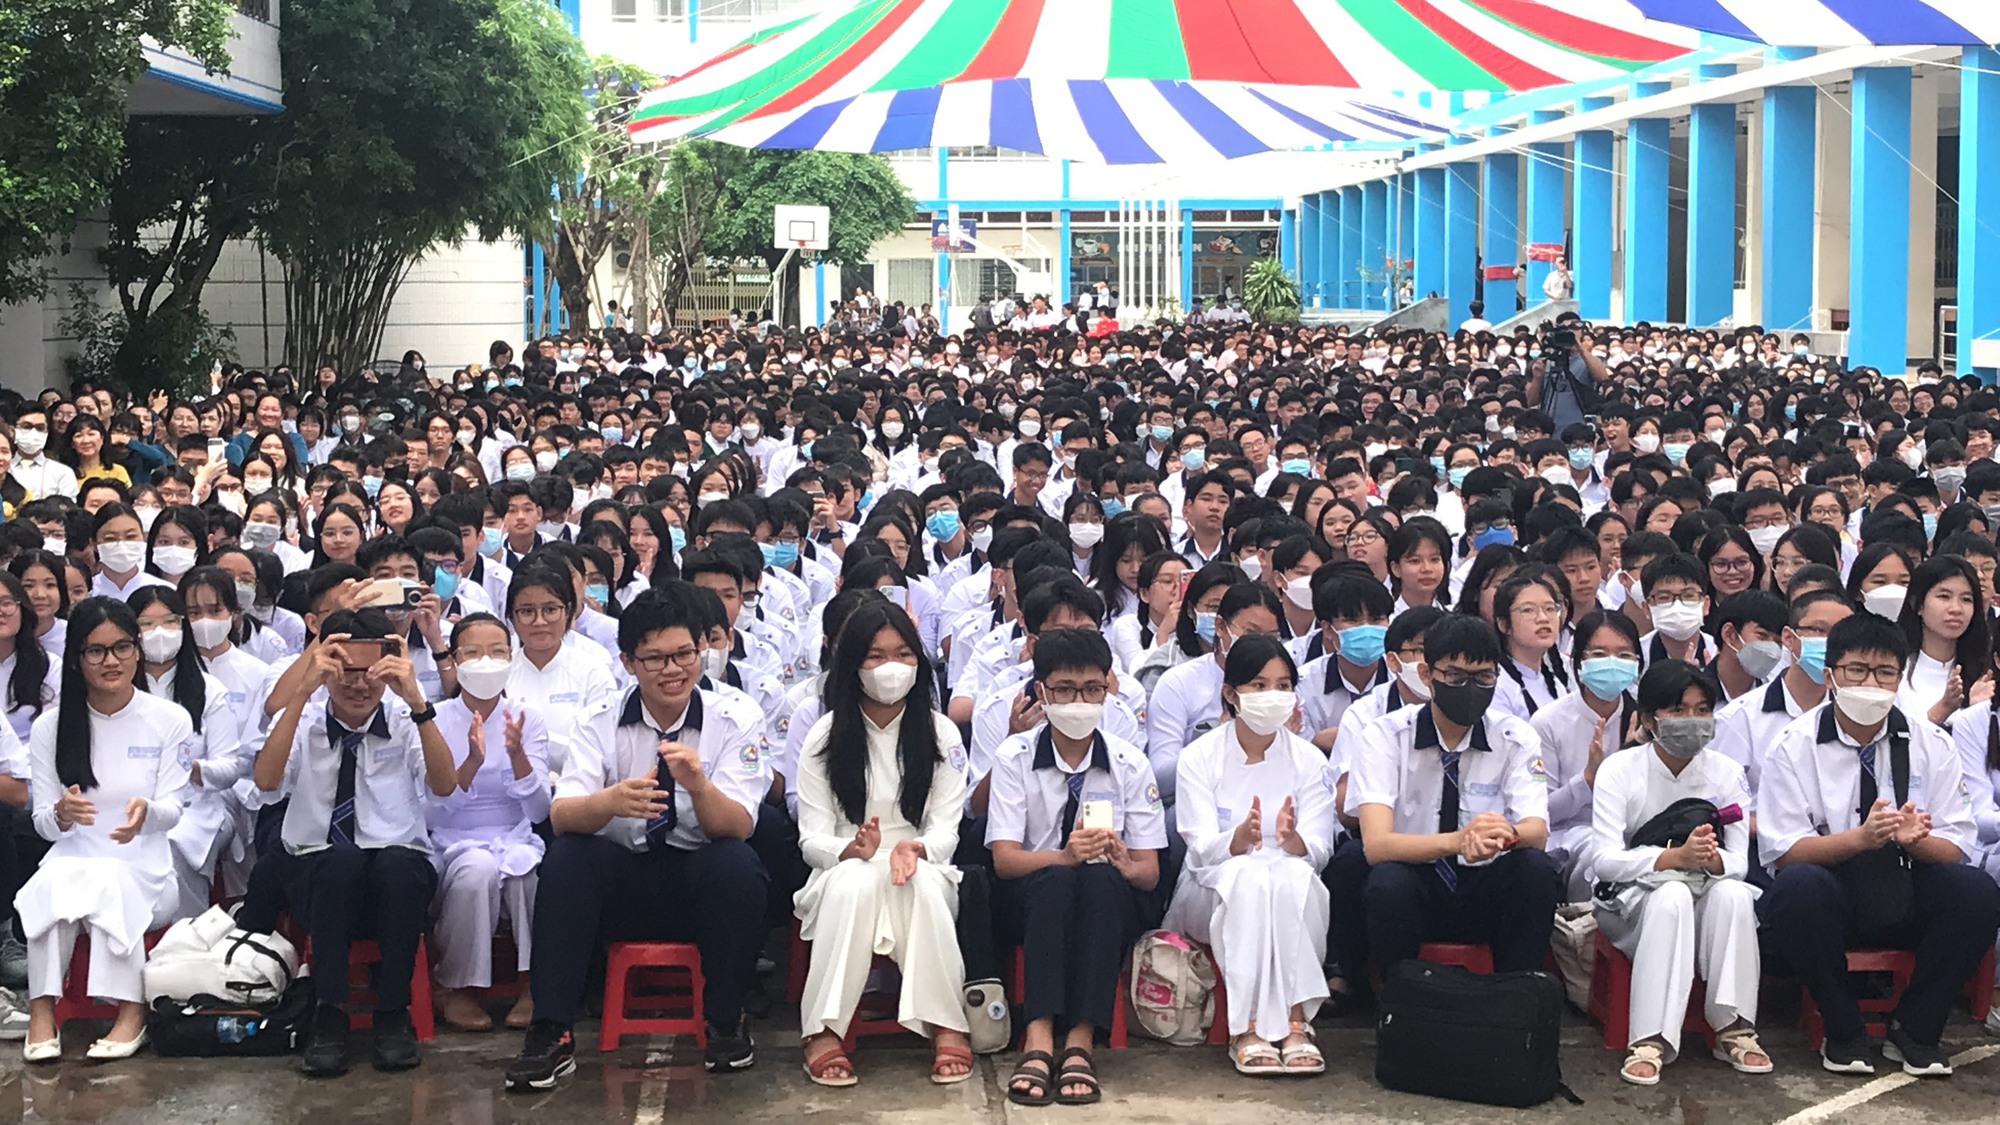 Hiệu trưởng Trường THPT Bùi Thị Xuân nói gì về việc đếm like, share để chấm điểm học sinh - Ảnh 3.